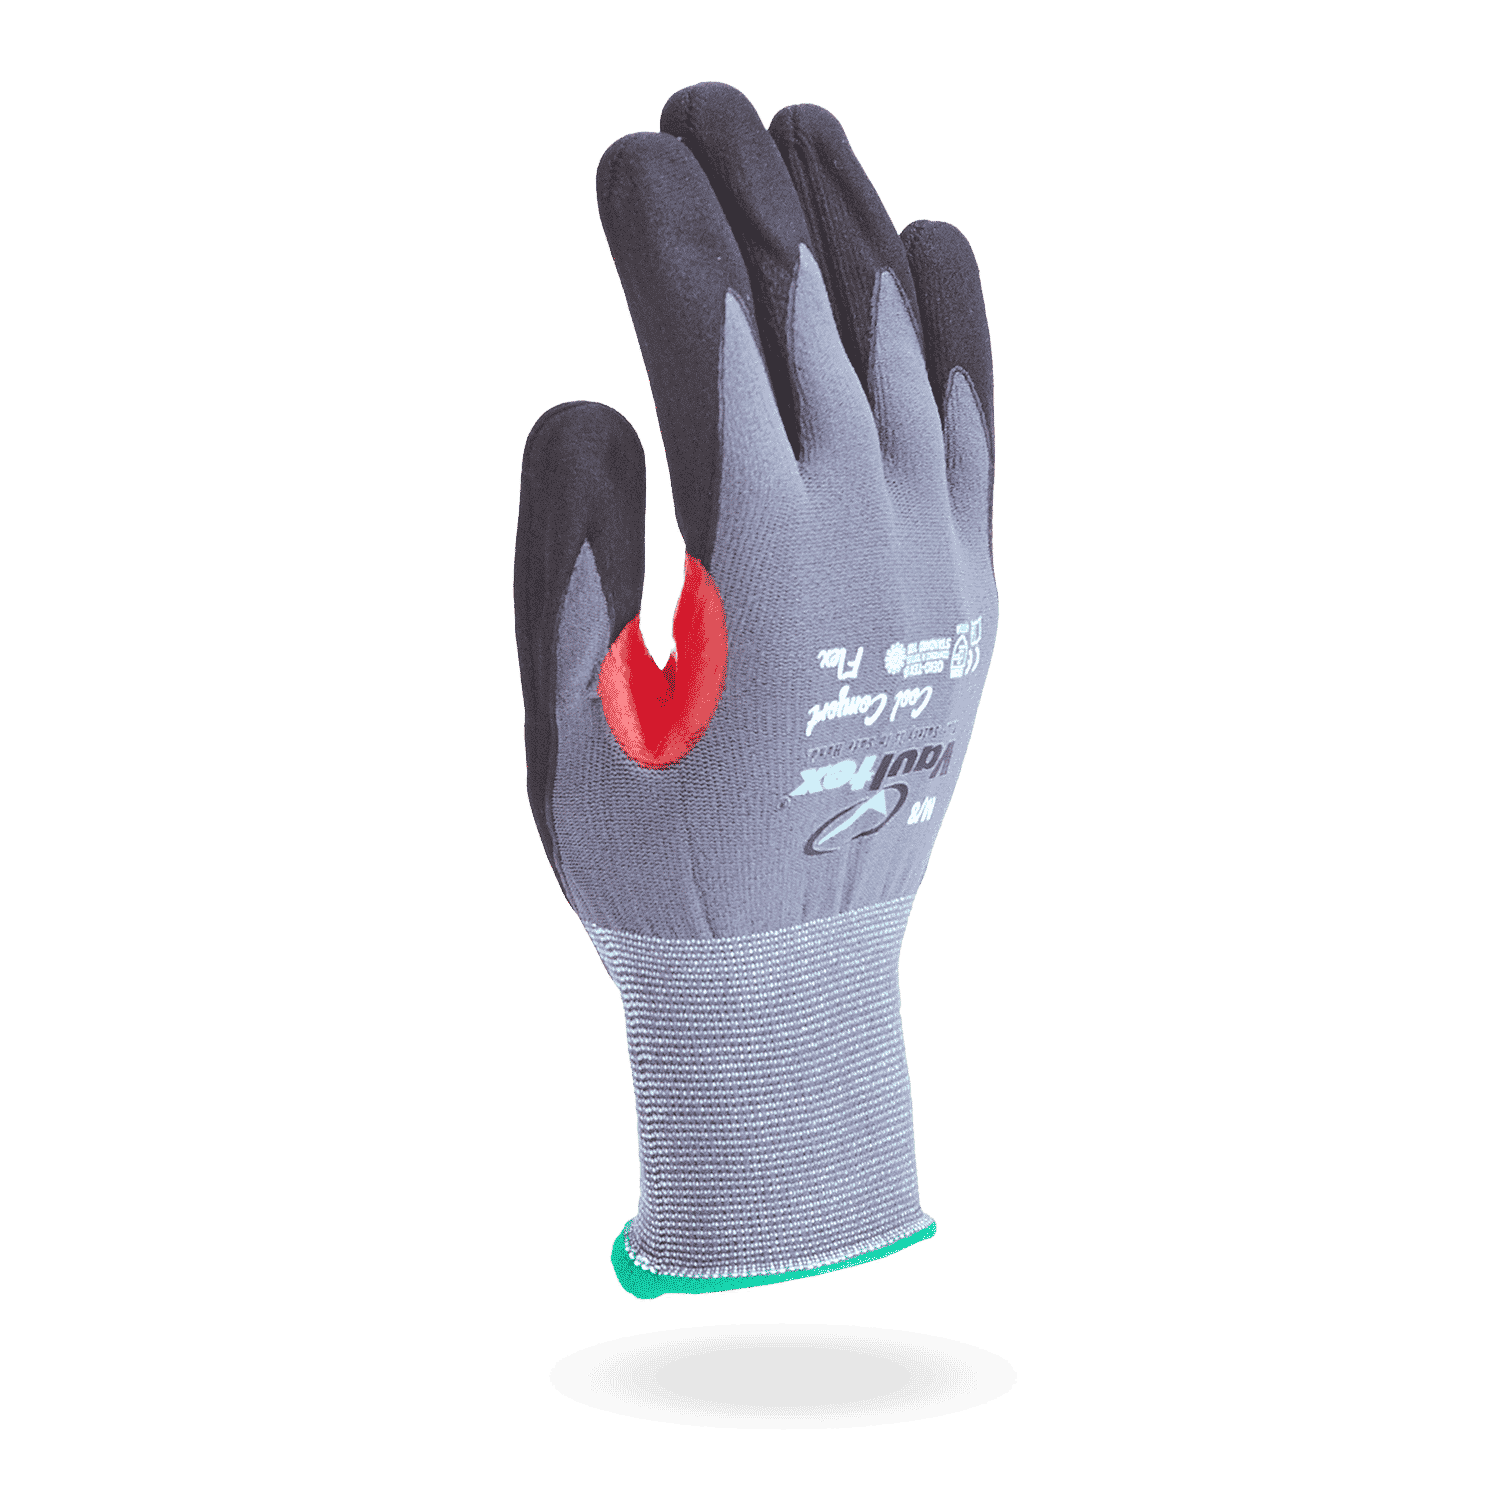 vaultex-schnittschutzhandschuhe-red-protect-hauptbild